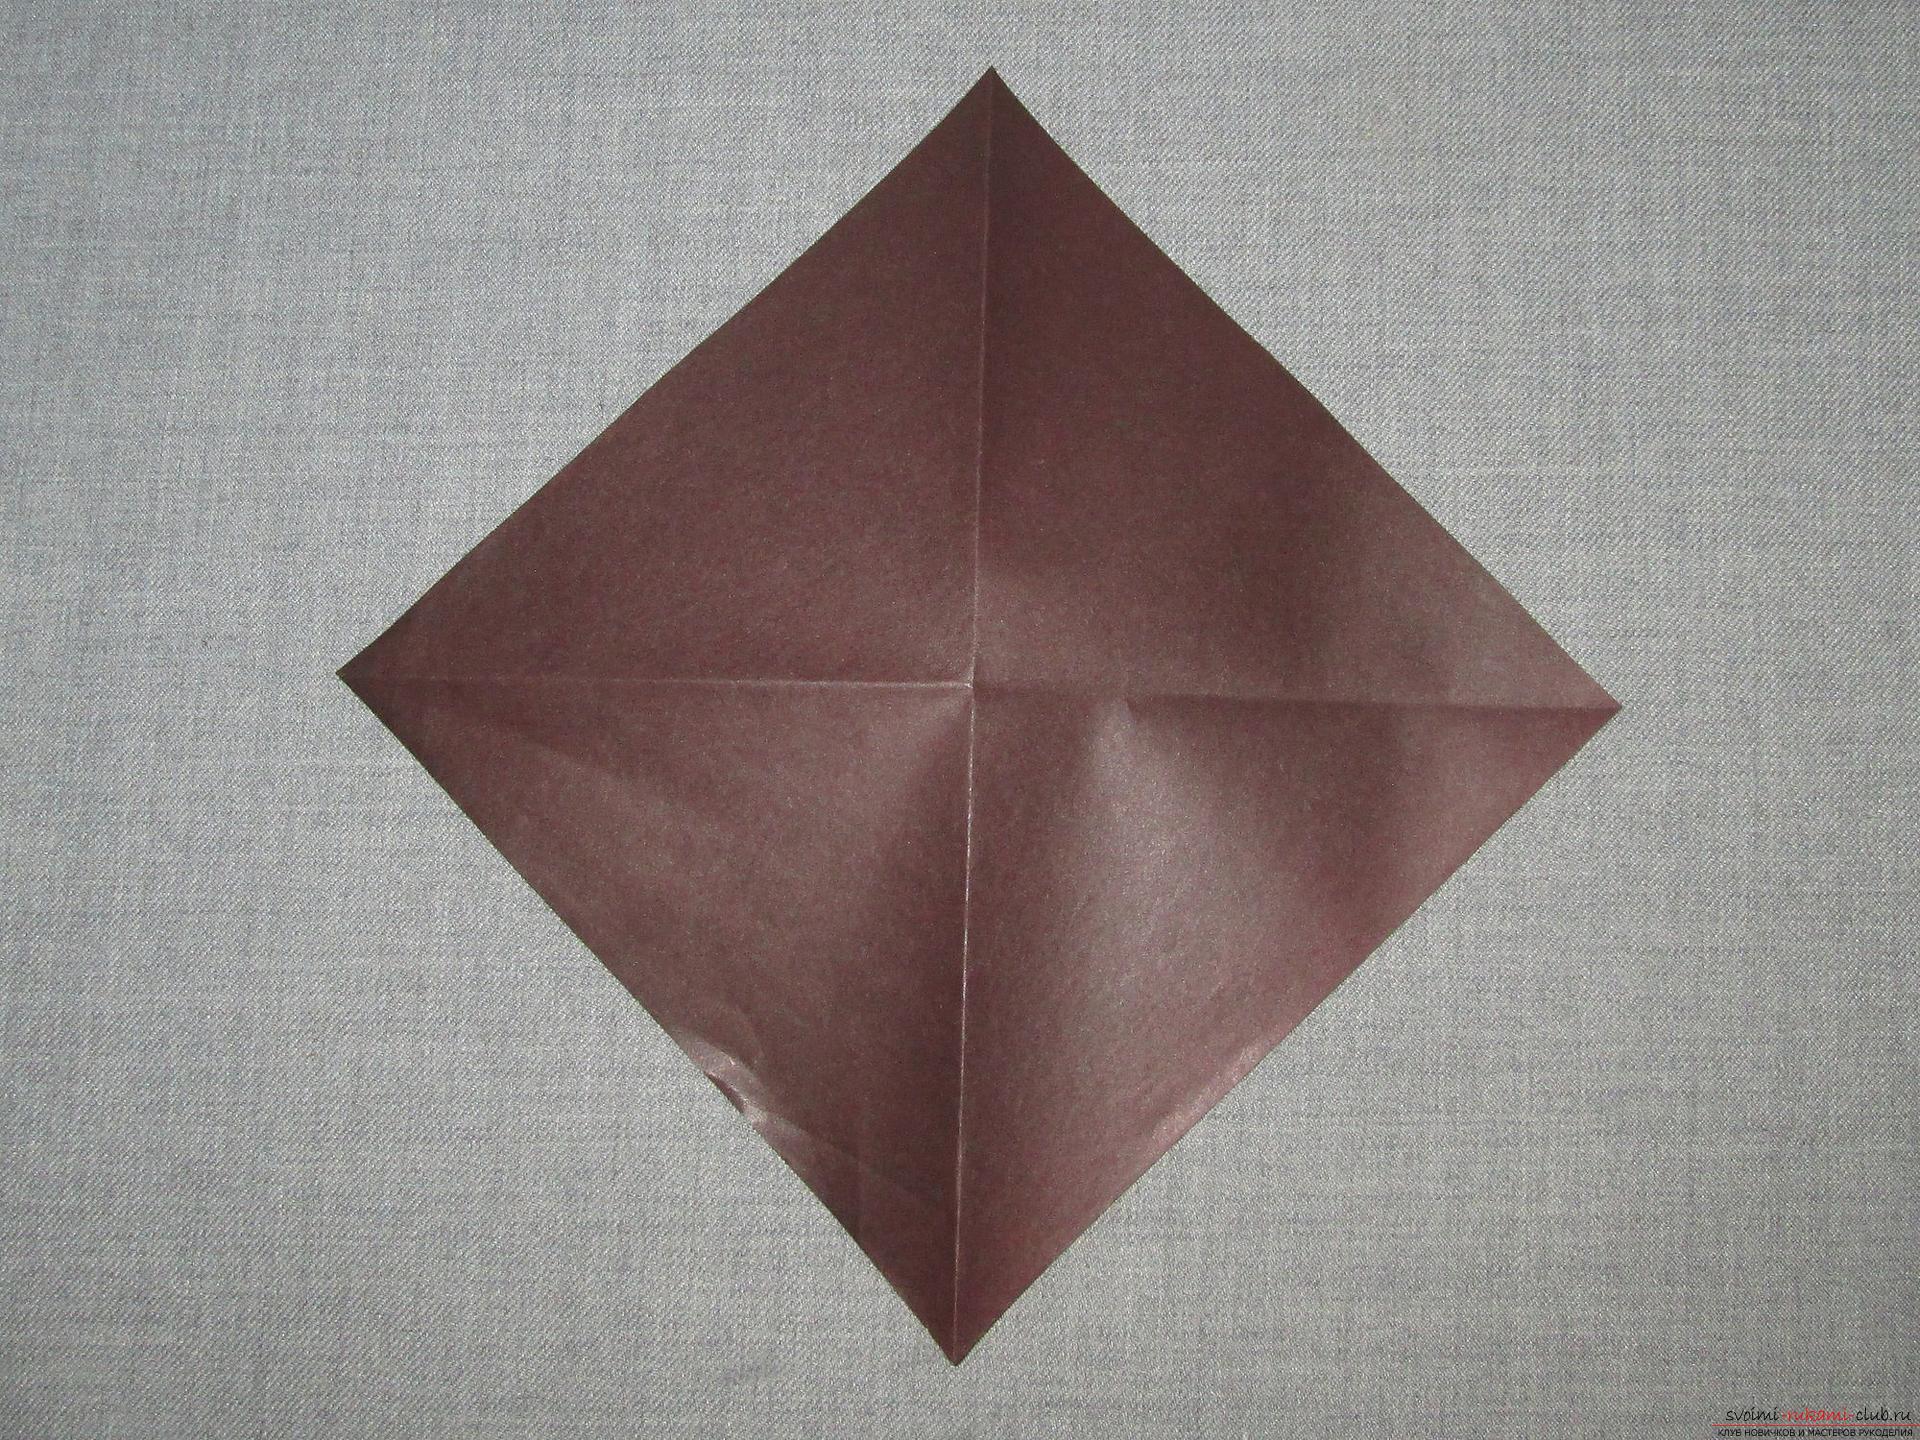 Этот подробный мастер-класс с фото и описание научит как сделать оригами для начинающих - оригами-собаку из бумаги.. Фото №2